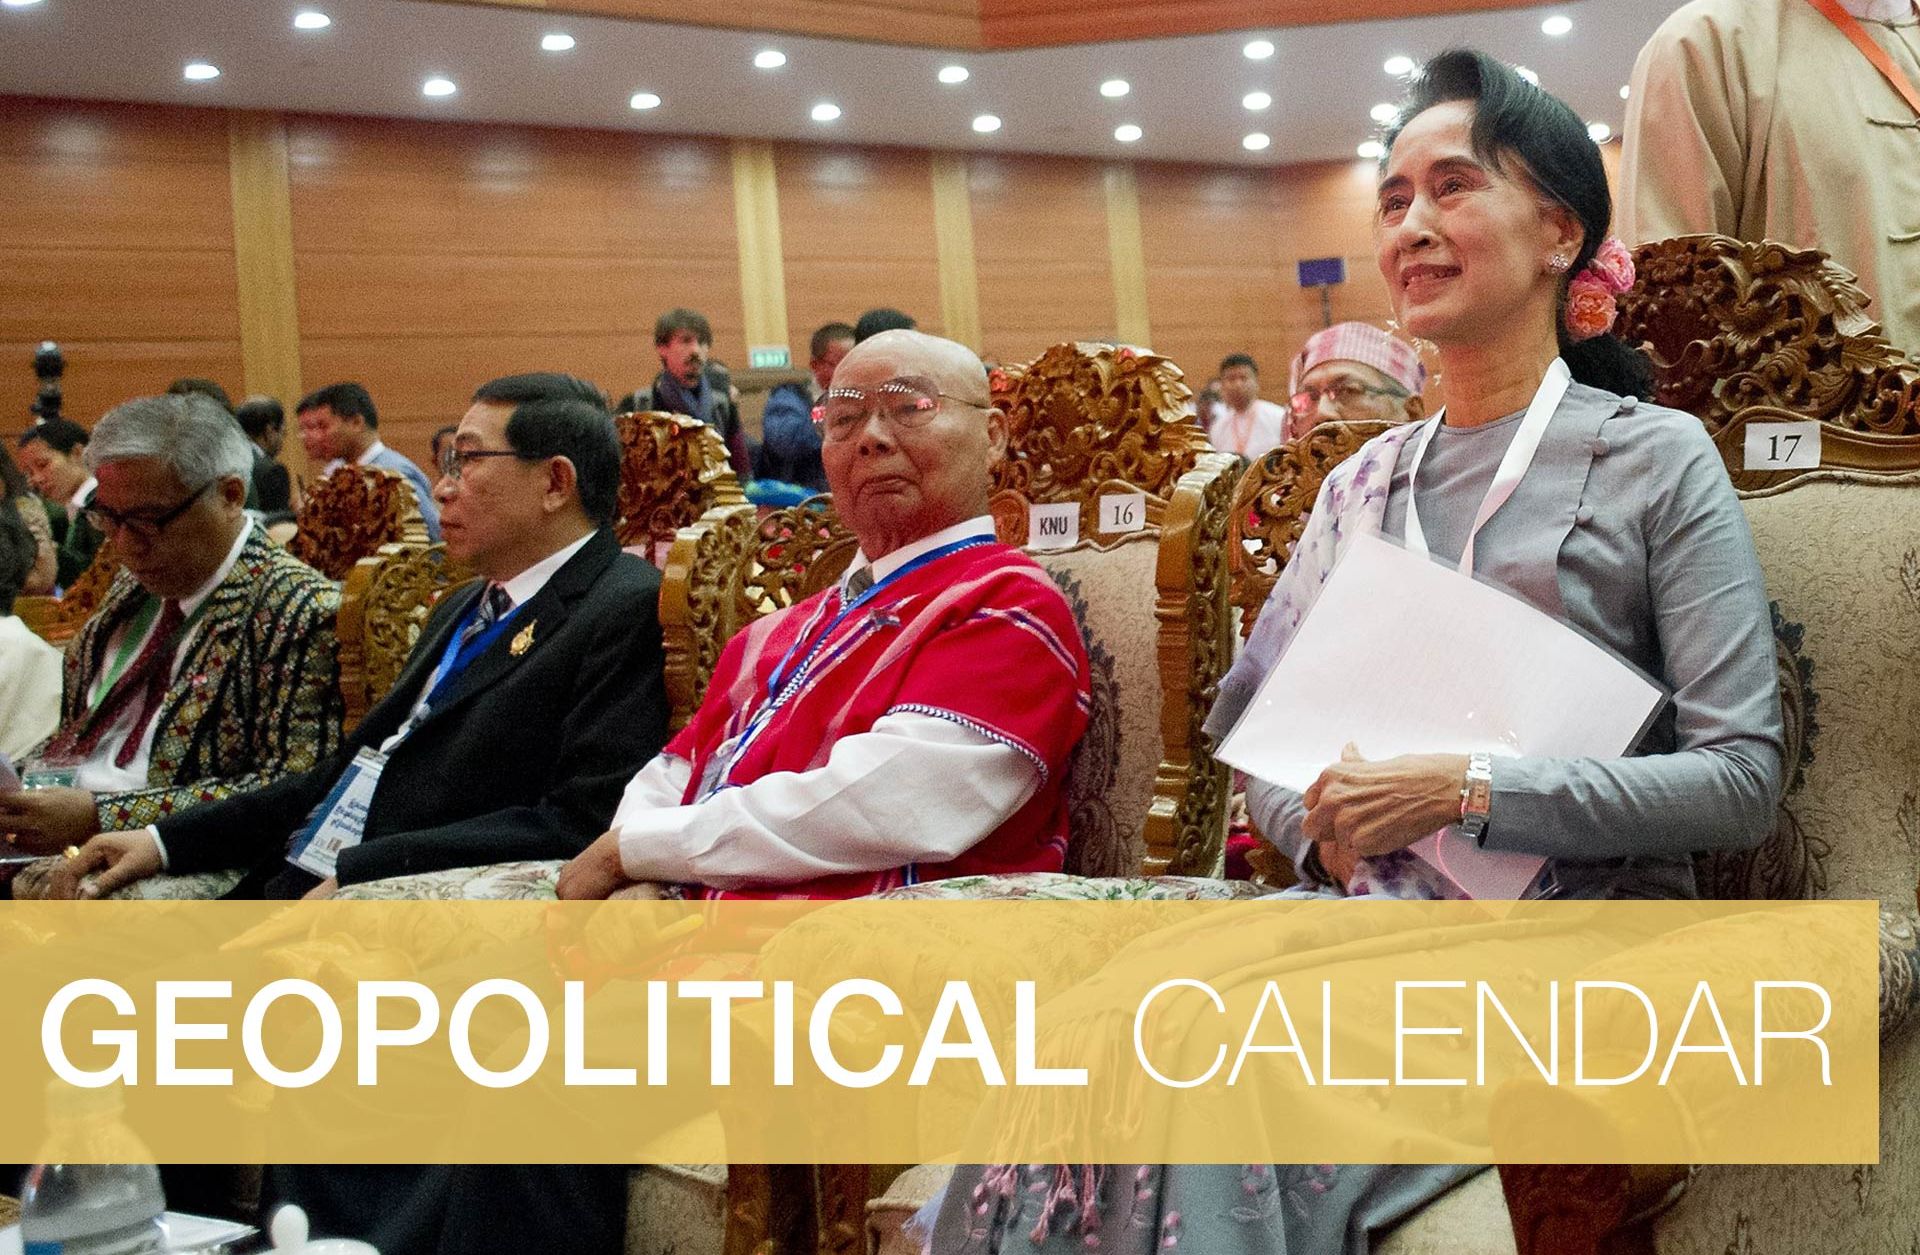 Geopolitical Calendar: Week of Aug. 29, 2016